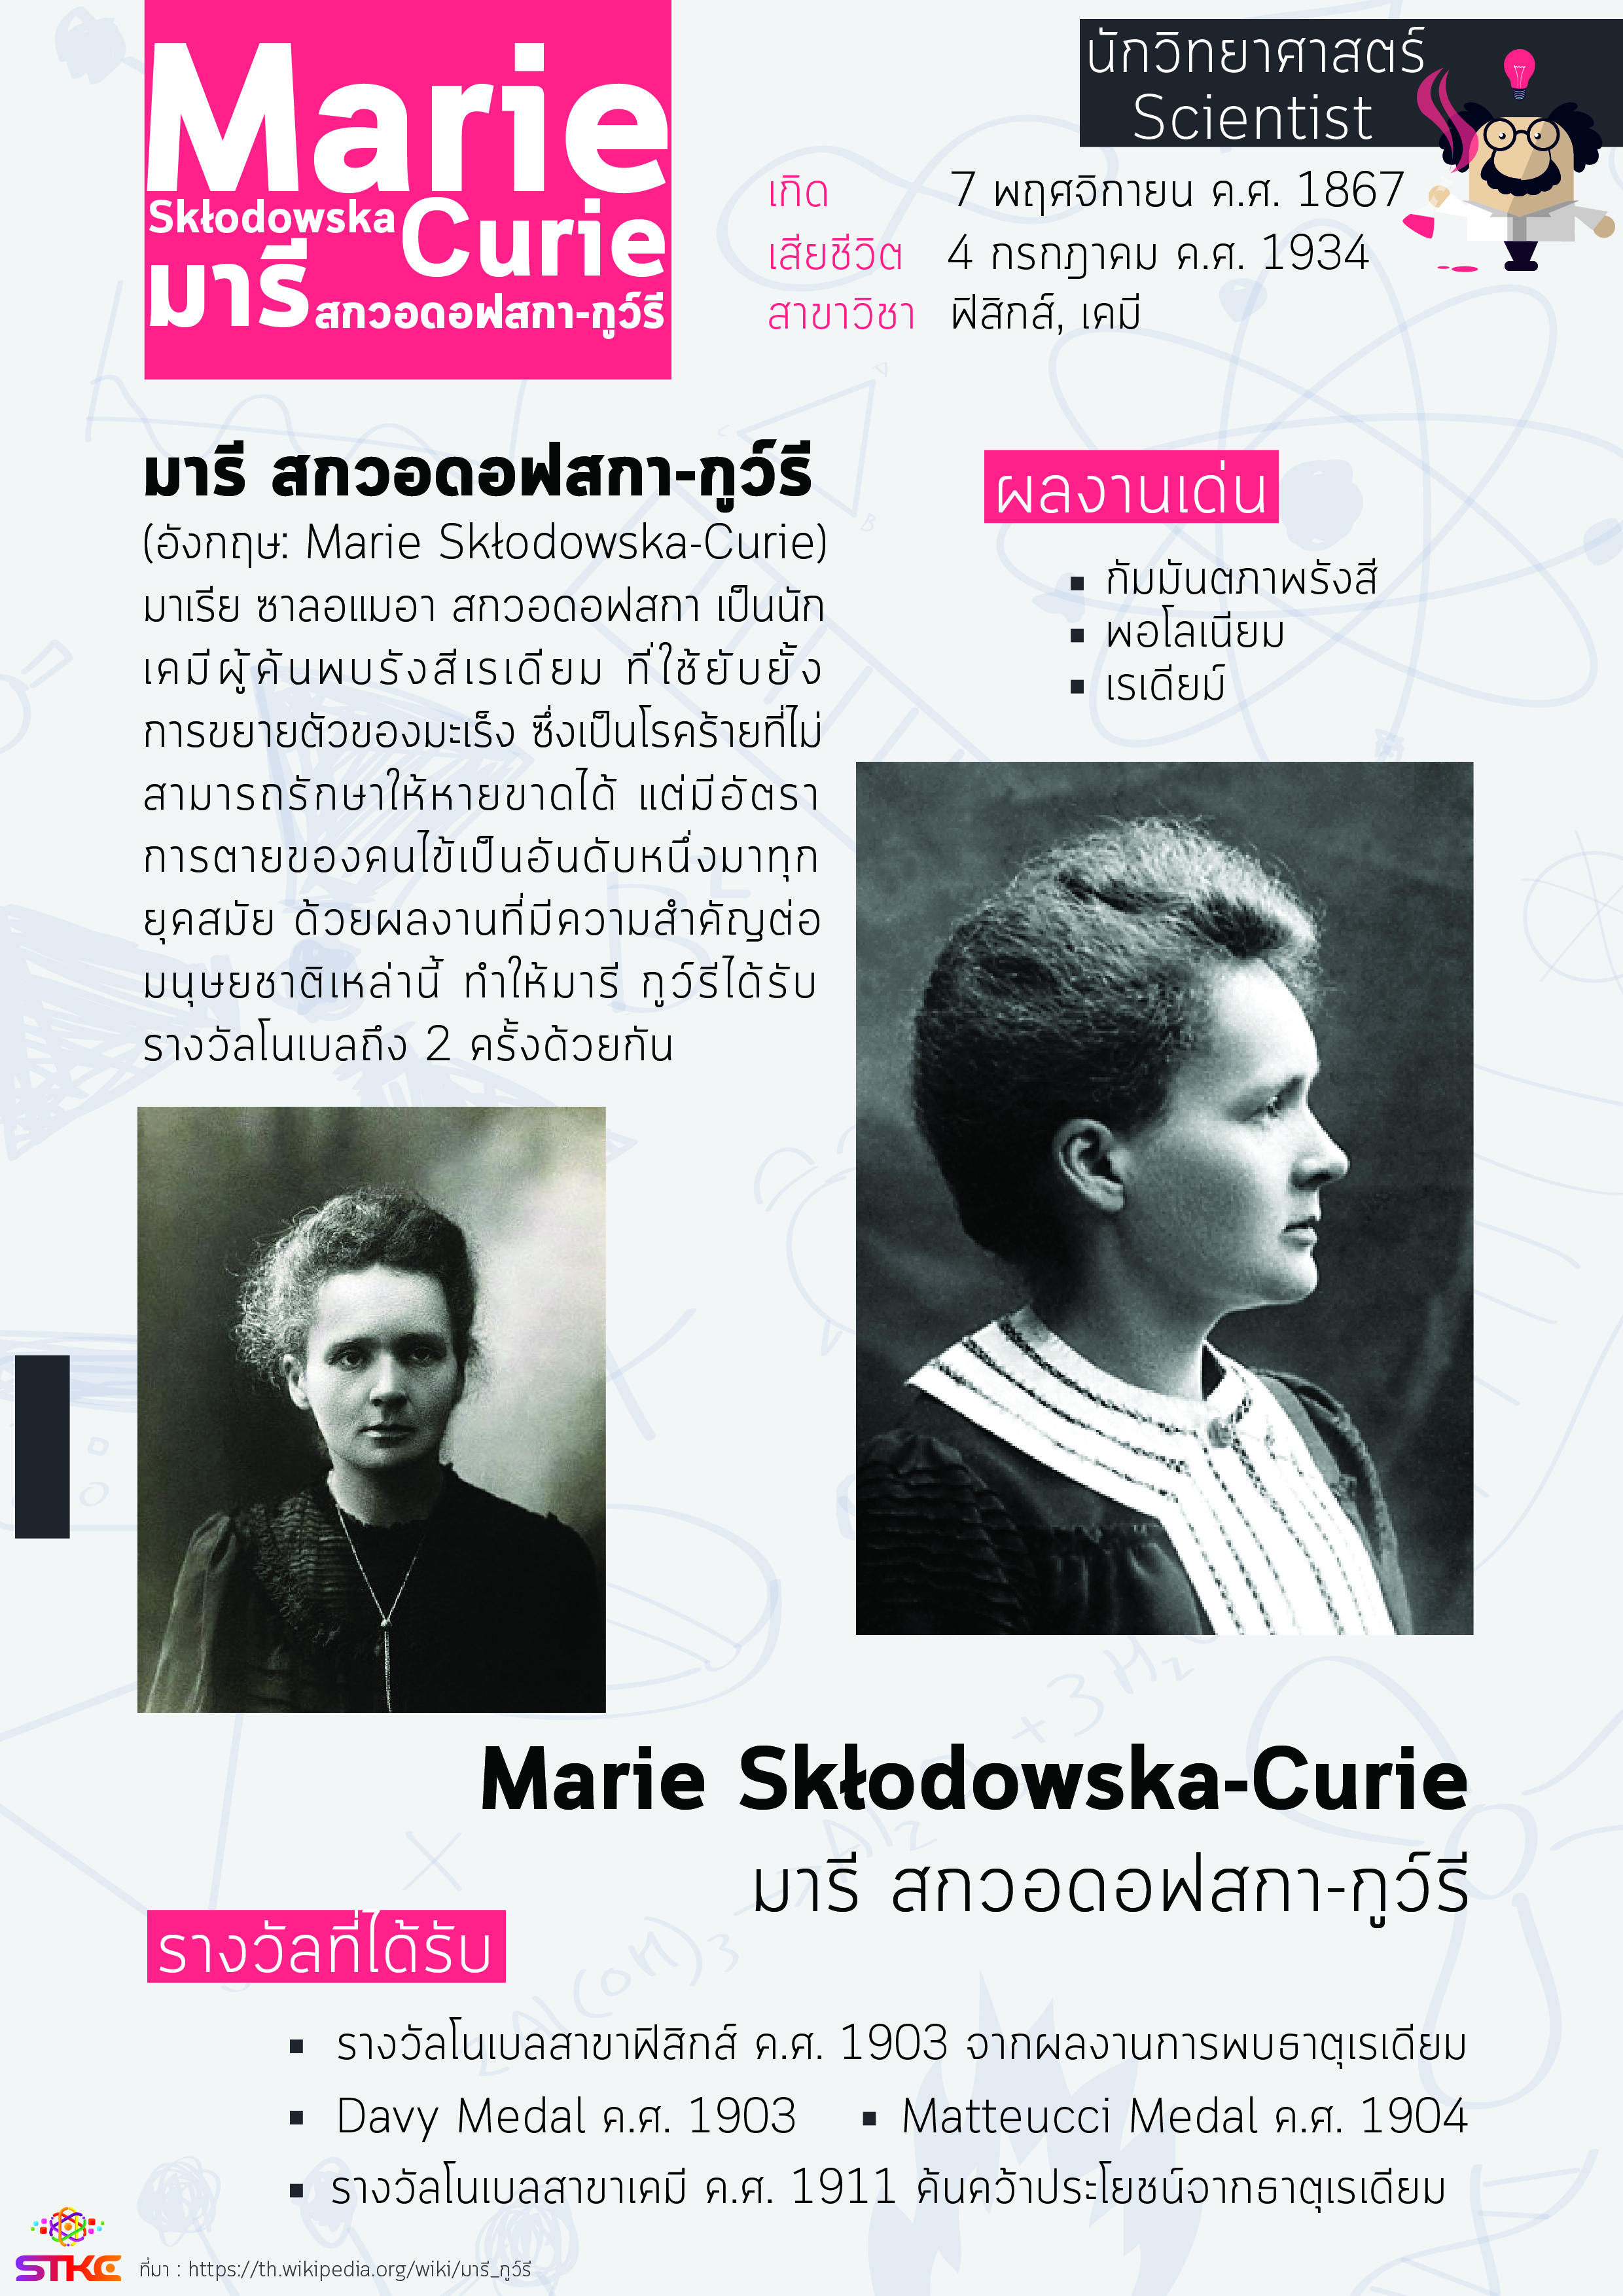 นักวิทยาศาสตร์ มารี สกวอดอฟสกา-กูว์รี (Marie Skłodowska-Curie)